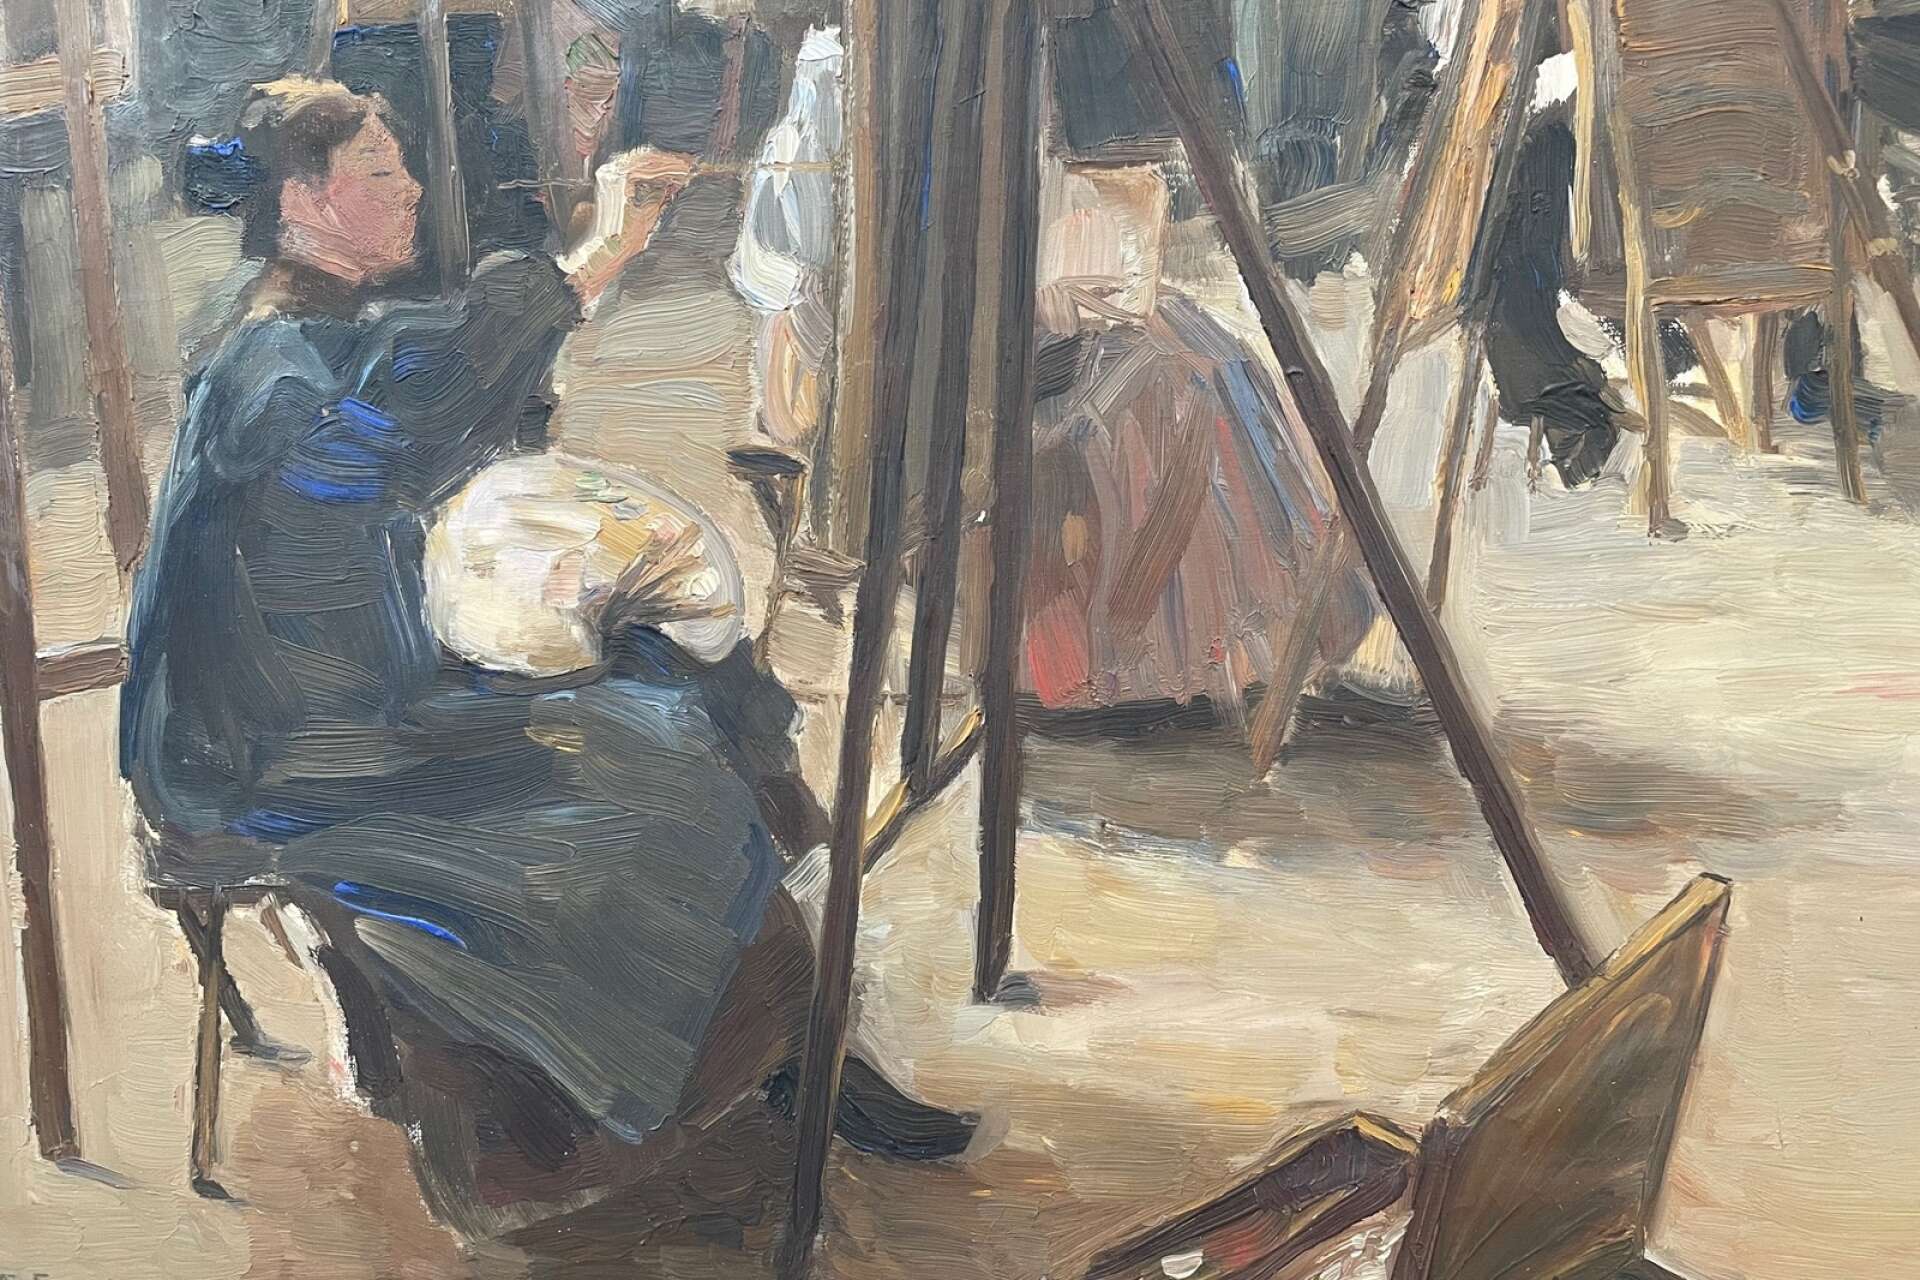 Ett porträtt av Maja målat av den dåvarande fästmannen Axel Erdmann från tiden då de studerade på Konstnärsförbundets målarskola. 